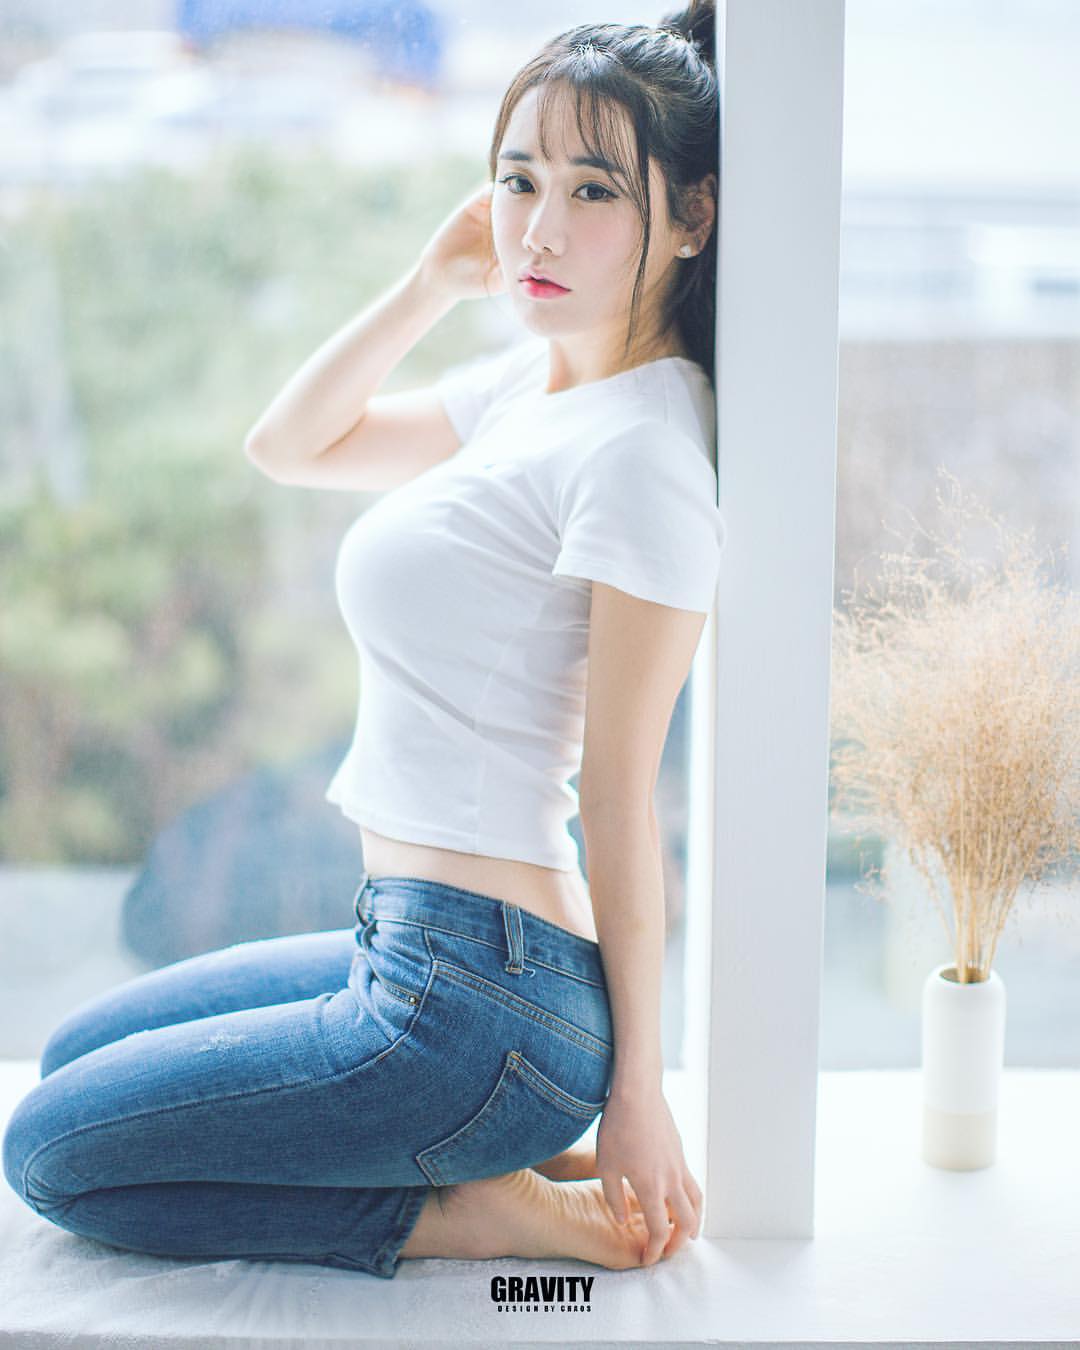 Skinny Cute Asian Girl Telegraph